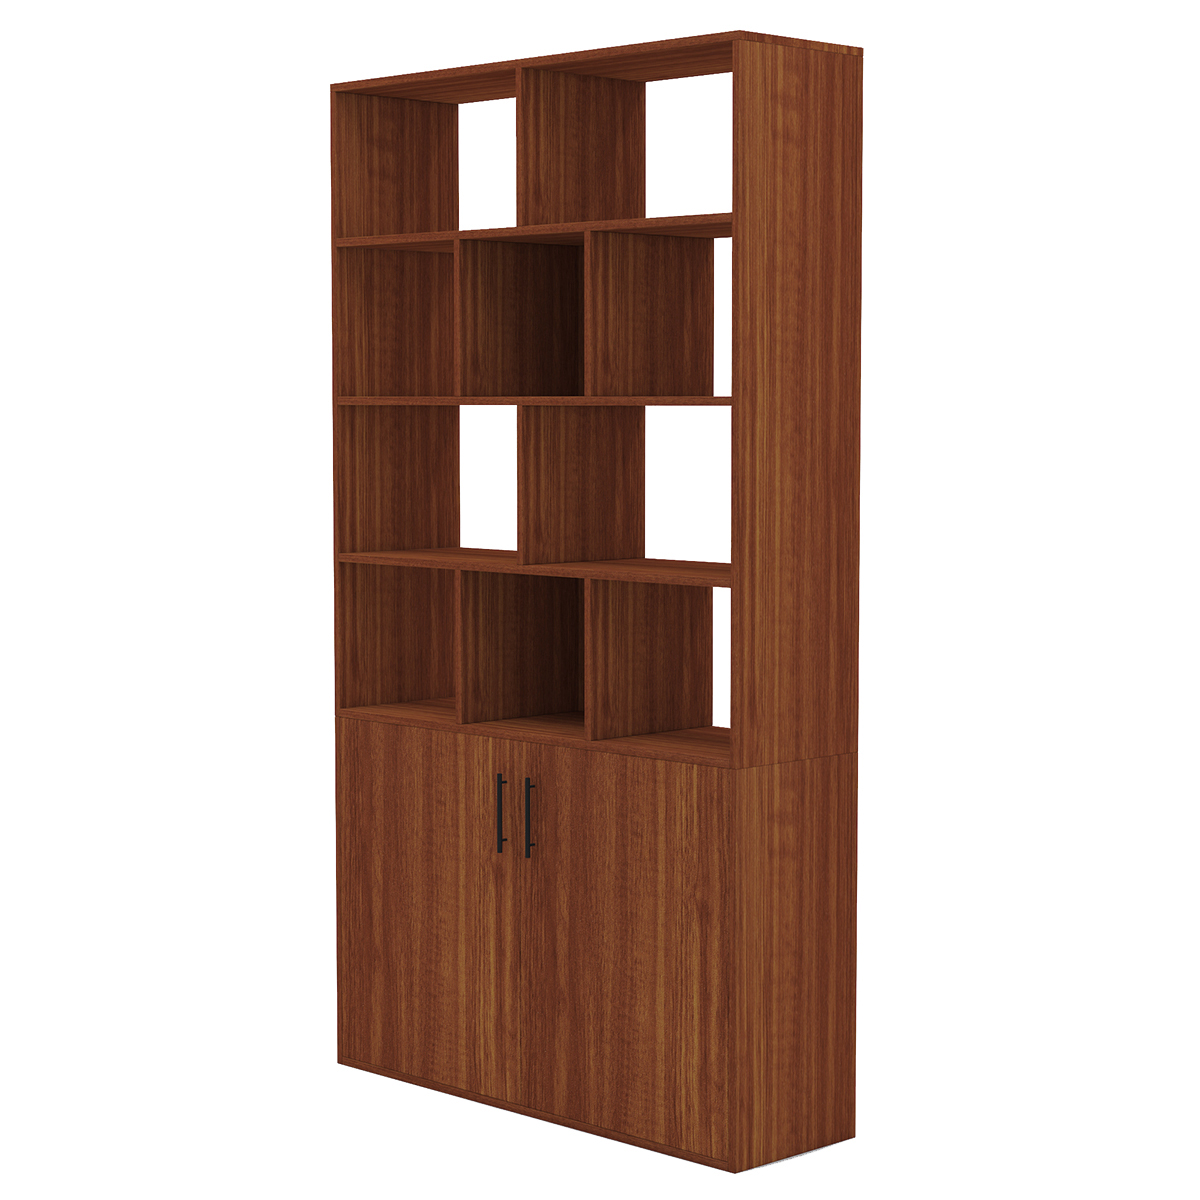 BlackWhiteOak-Dark-CherryWalnut-Wooden-Bookcase-Storage-Bookcase-with-Door-Storage-Finishing-Bookcas-1909997-18